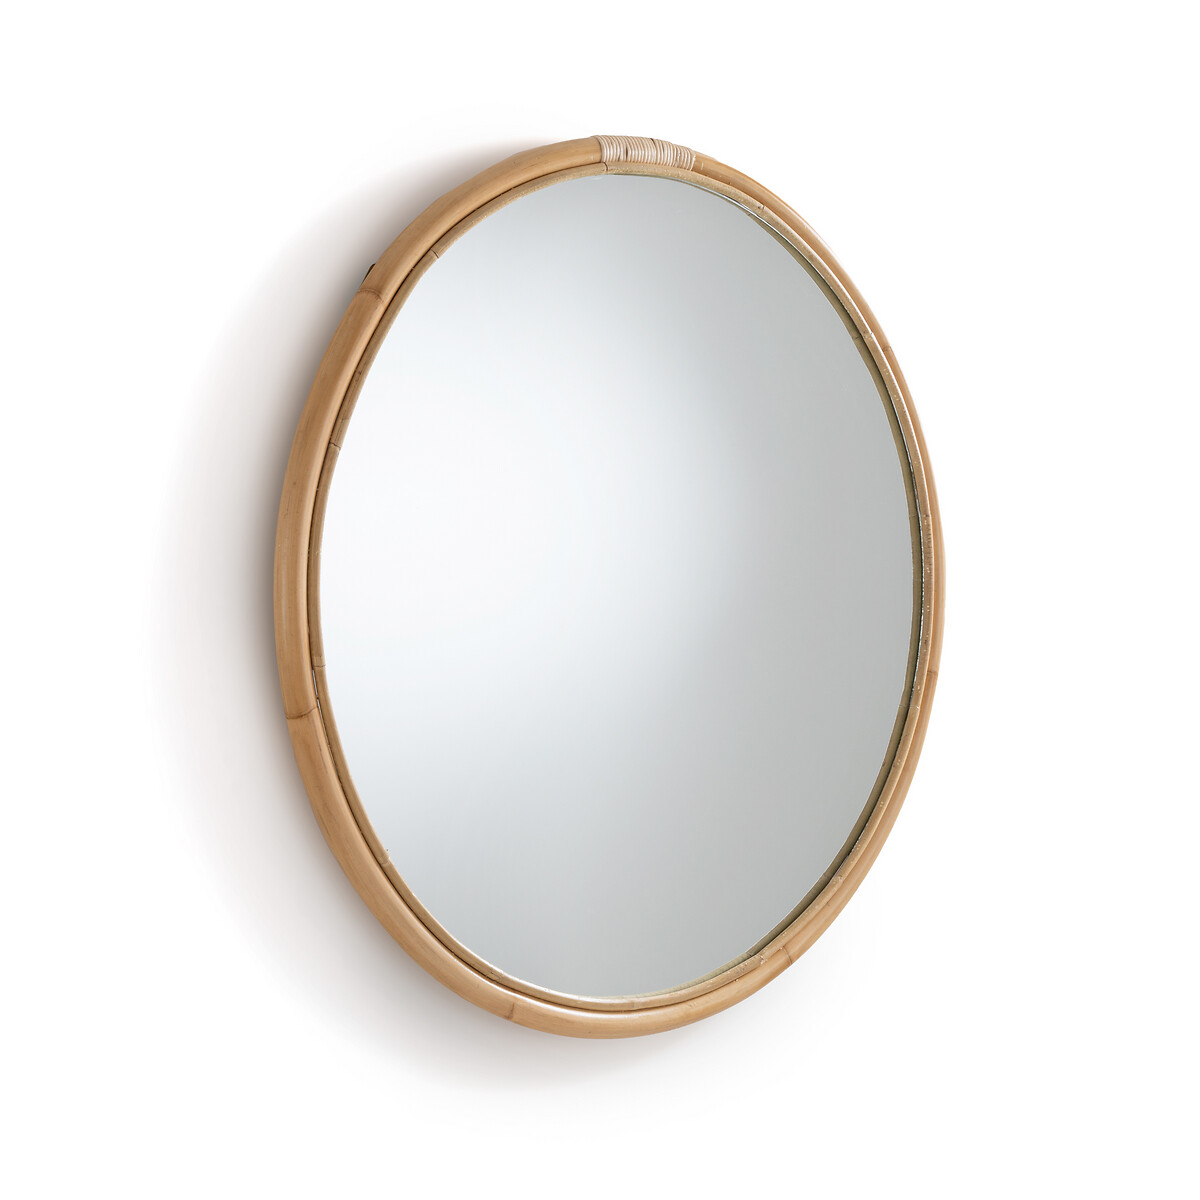 Зеркало круглое из ротанга 90 см Nogu единый размер бежевый зеркало квадратное с отделкой ротангом 60x60 см nogu единый размер бежевый